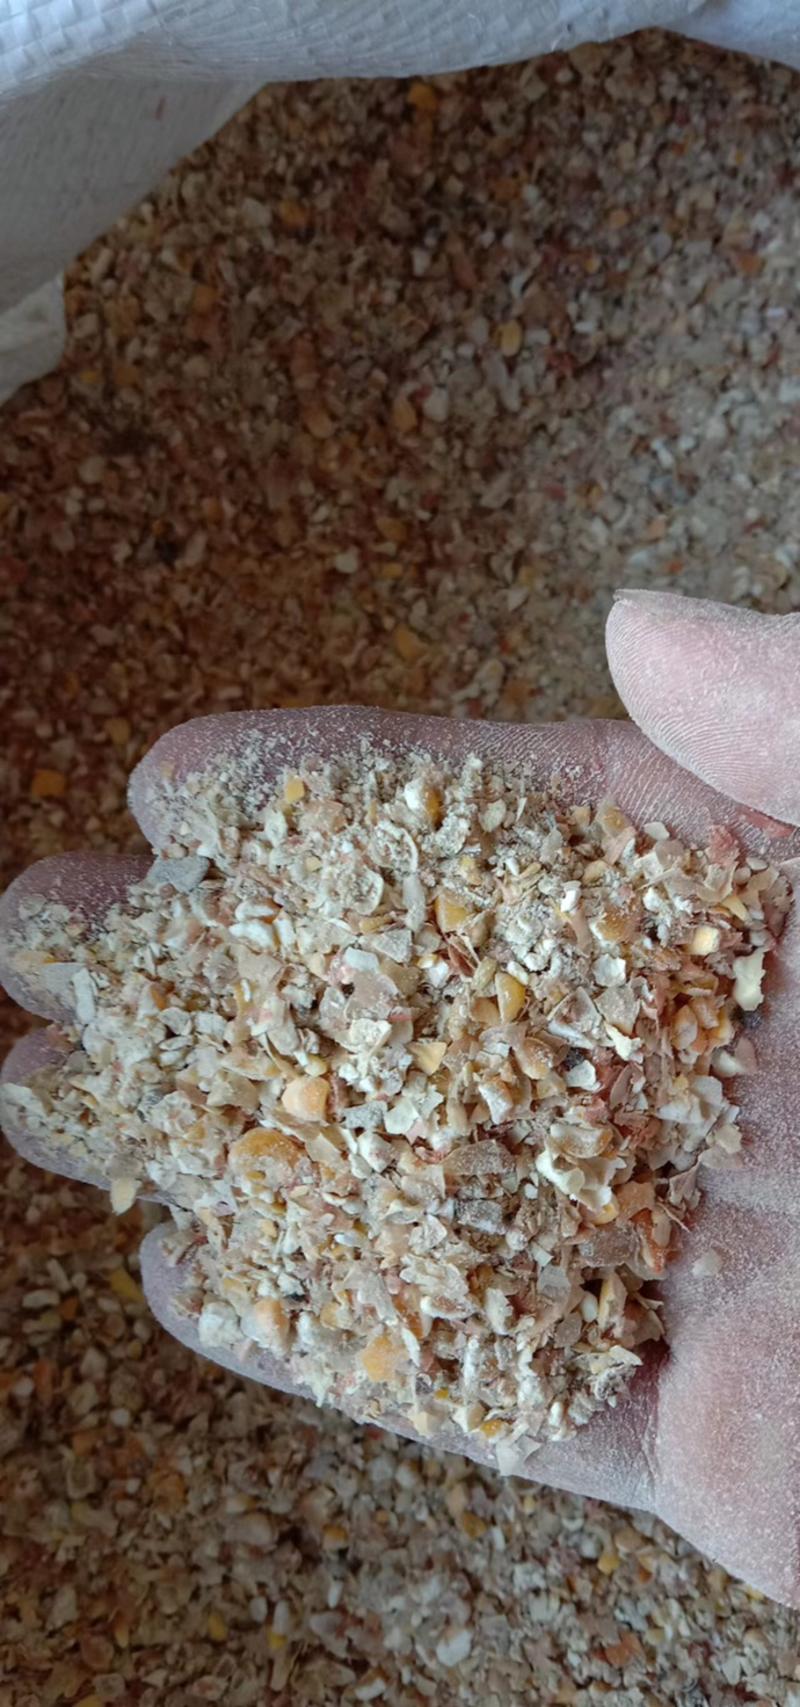 玉米碎有需要的可联系，营养高适合广大养殖户使用。